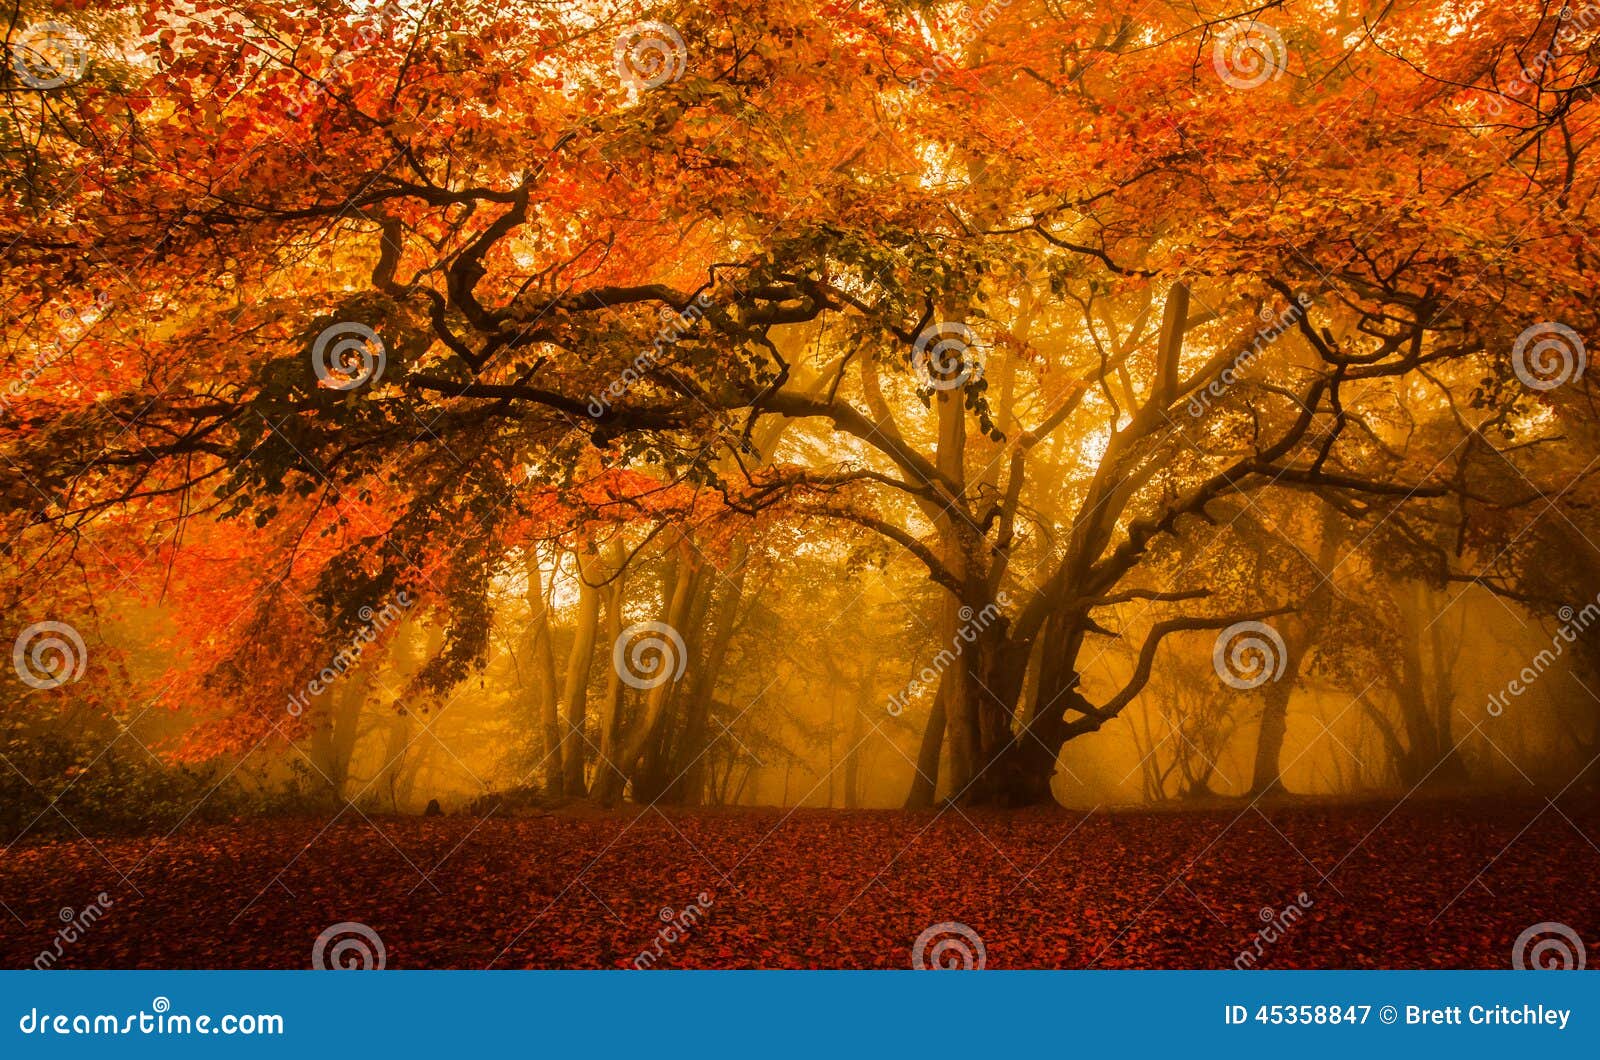 golden fall season forest